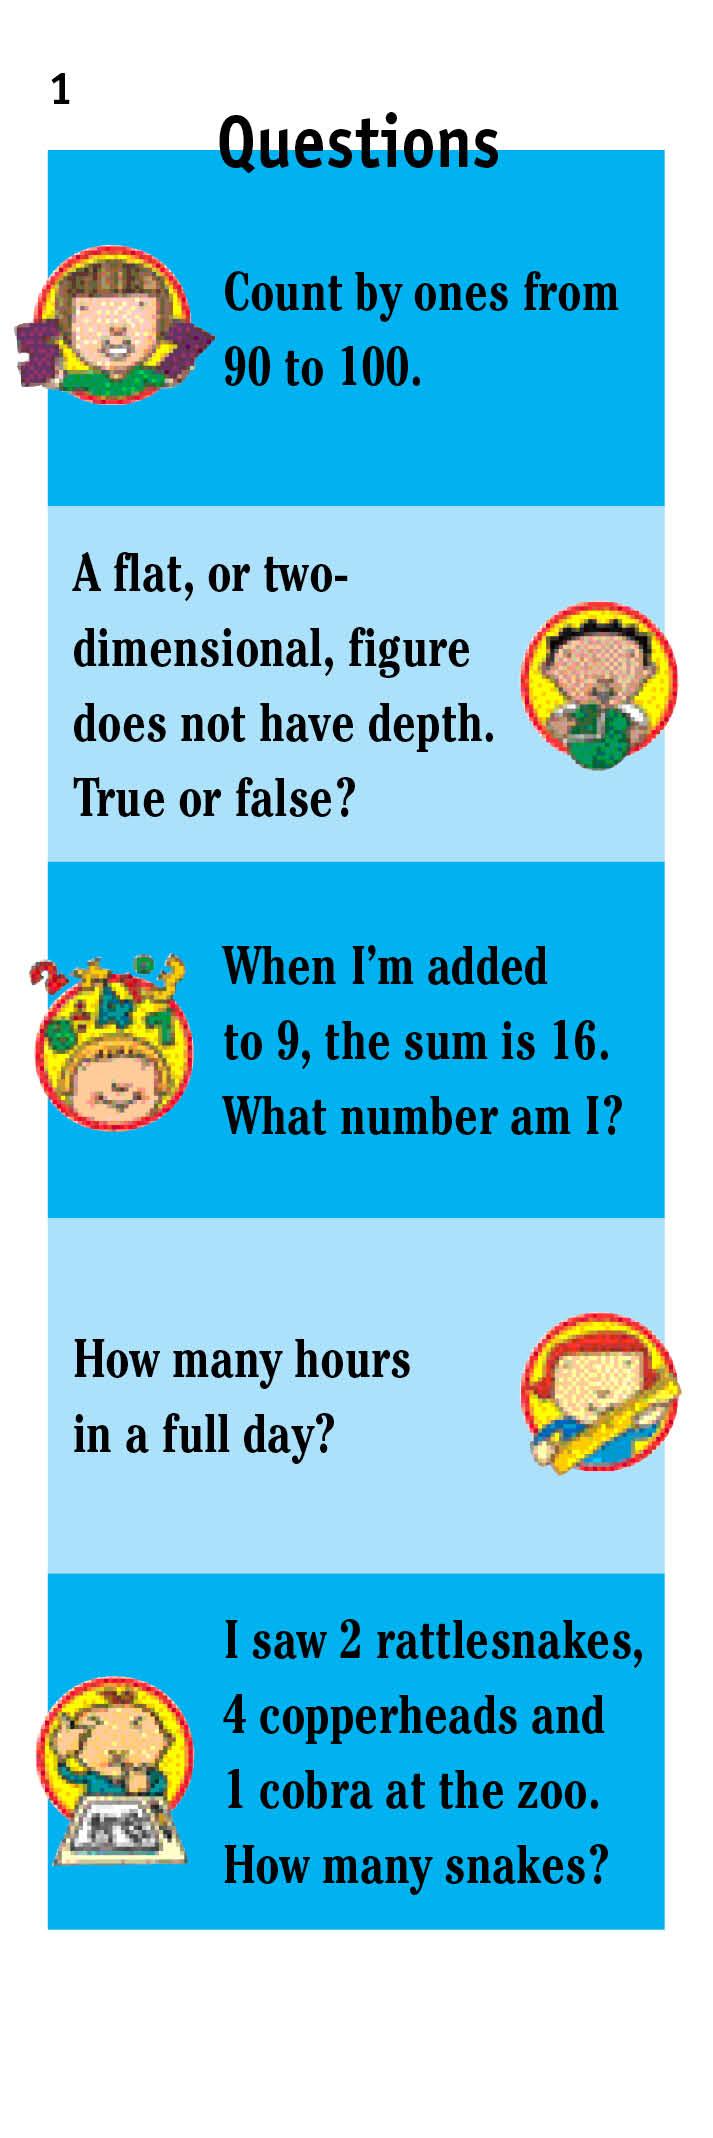 Brain Quest Math Q&A Cards: Grade 1 (Ages 6-7)